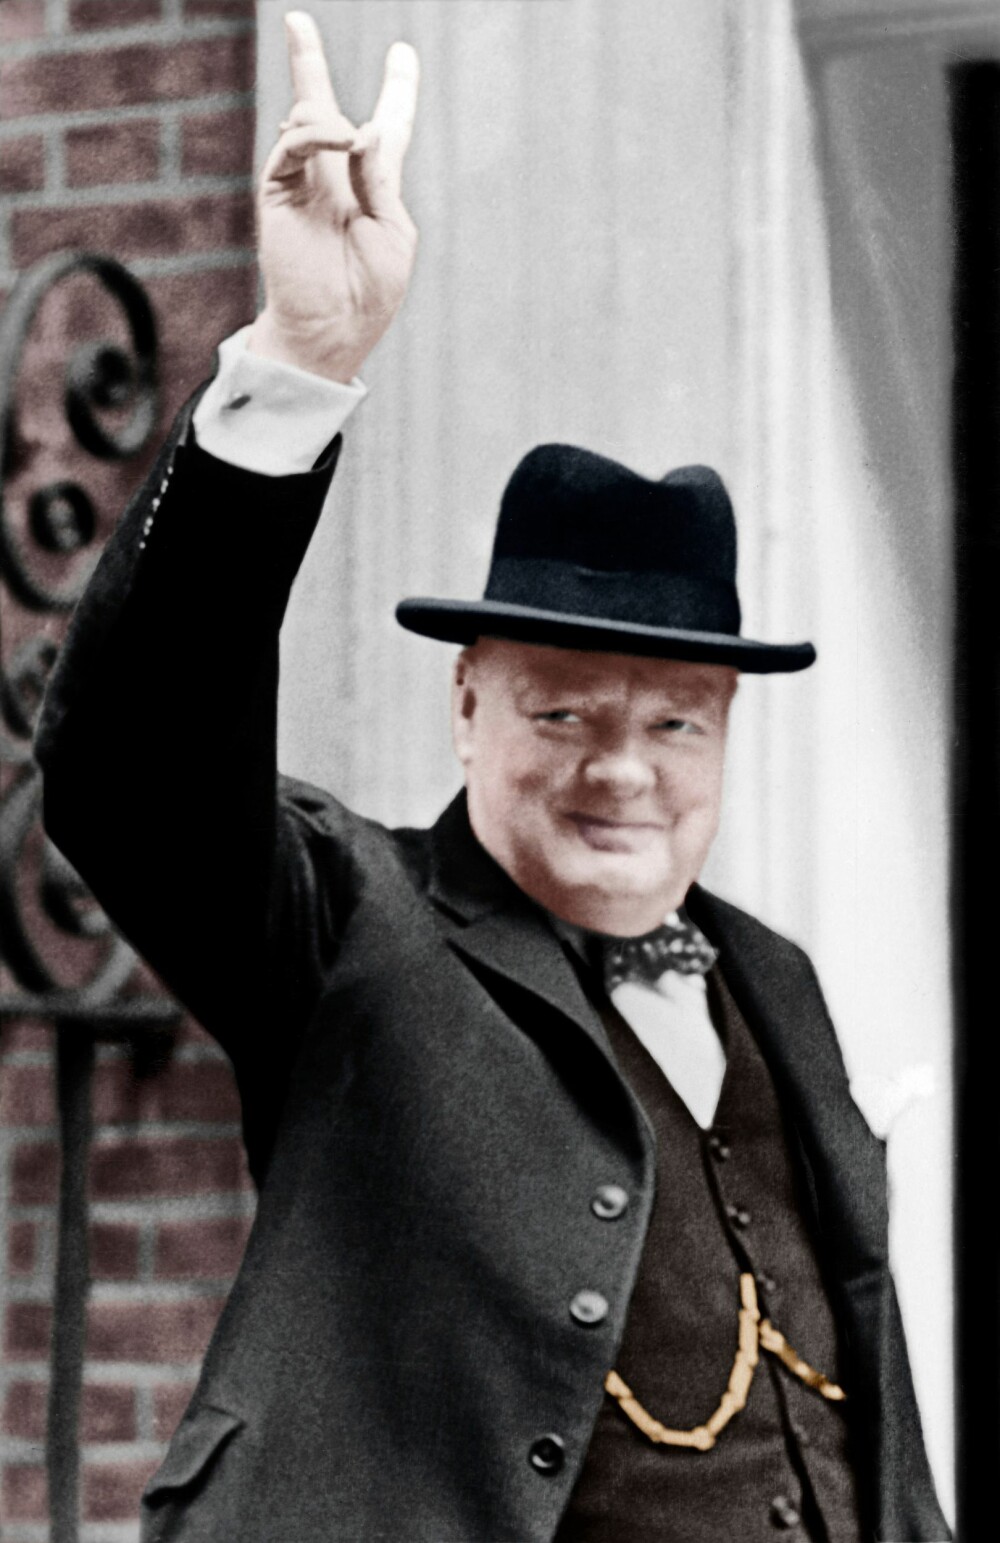 <b>HEMMELIG PLAN:</b> Den nyvalgte britiske statsministeren Winston Churchill planla å hente en tysk skalp i Narvik for og så returnere kjapt uten å varsle den norske regjeringen. Etterpå skulle han si at den norske regjeringen hadde bedt engelskmennene dra.